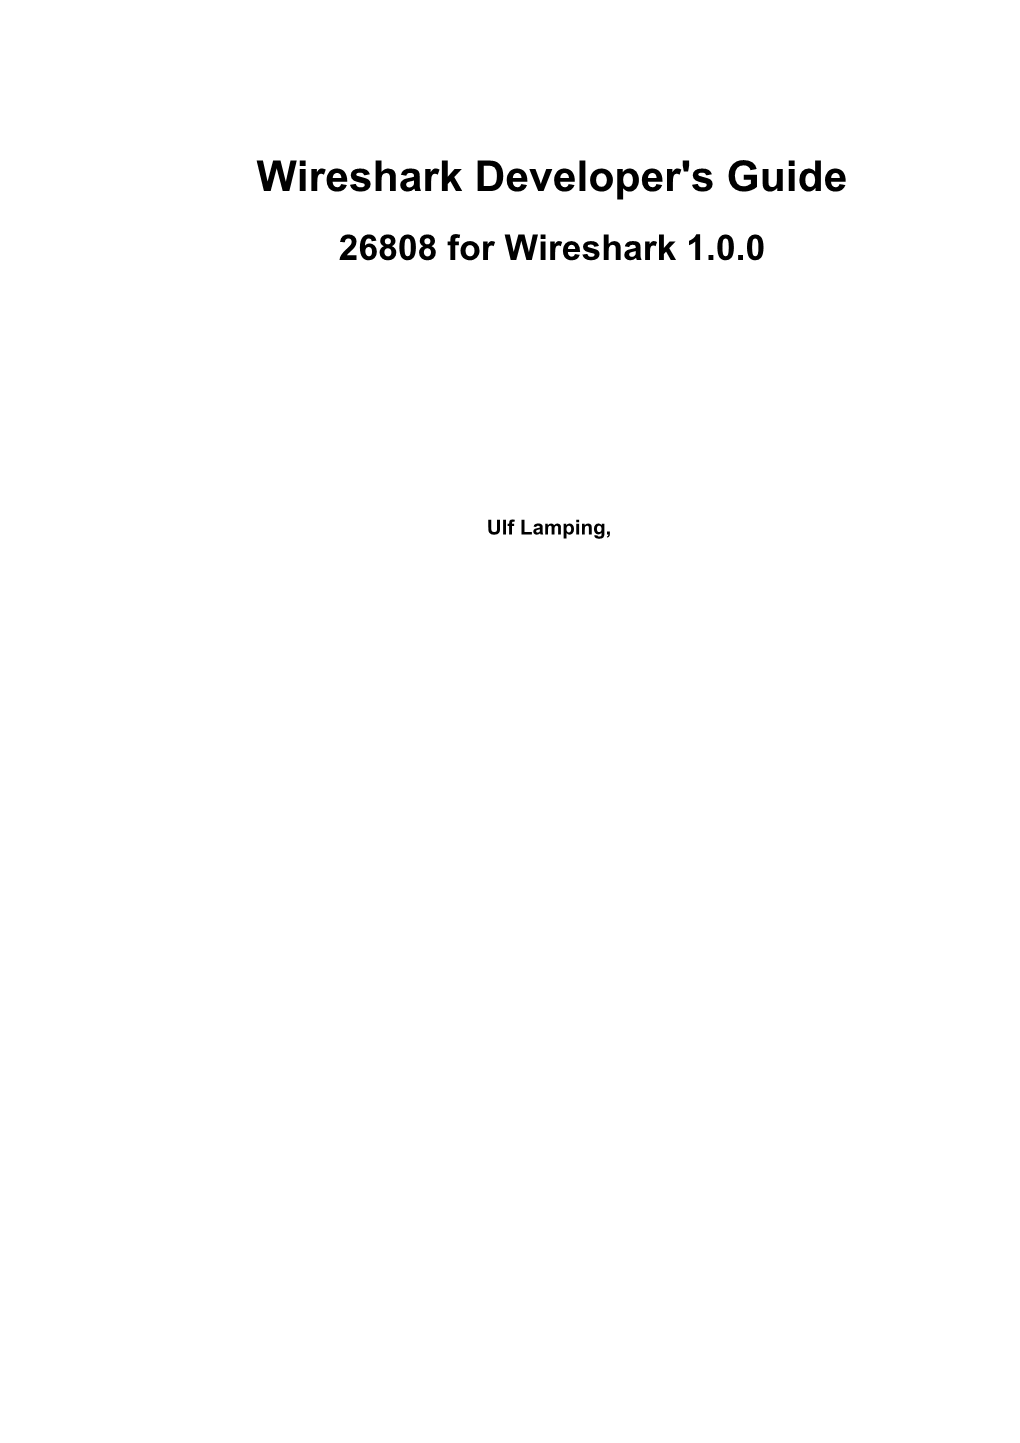 Wireshark Developer's Guide 26808 for Wireshark 1.0.0